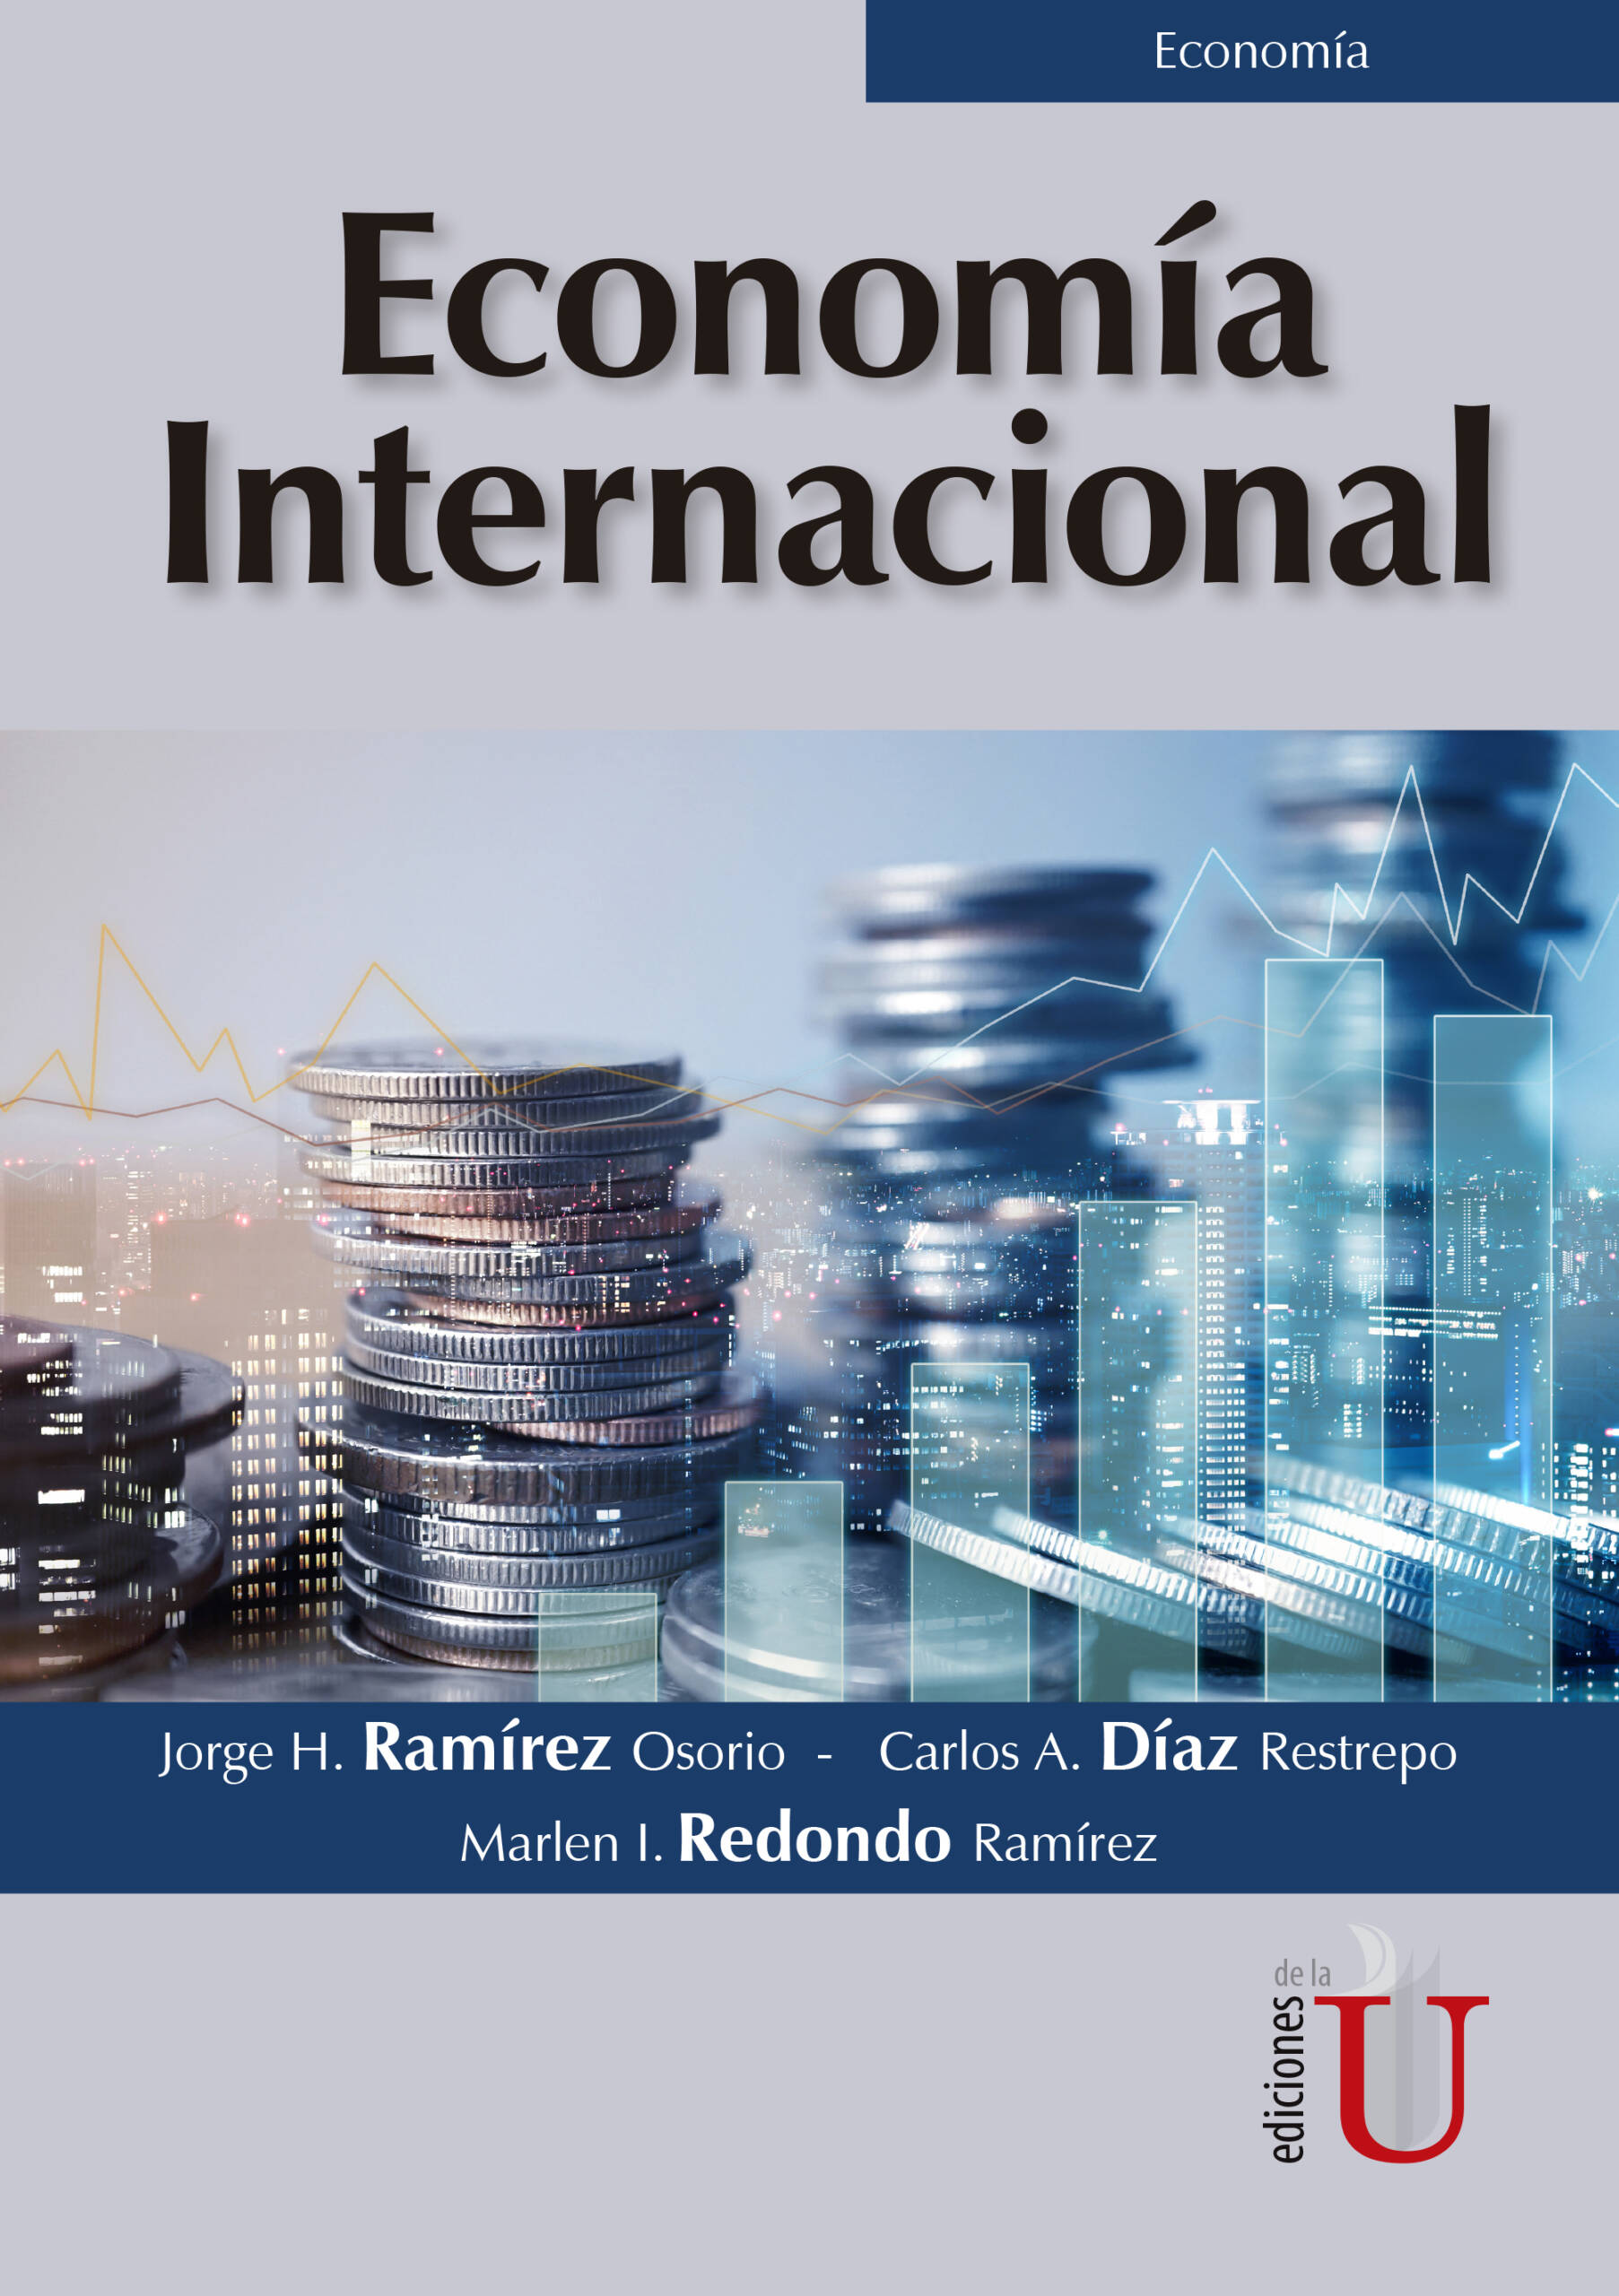 Economía internacional - Ediciones de U - Librería - Compra ahora